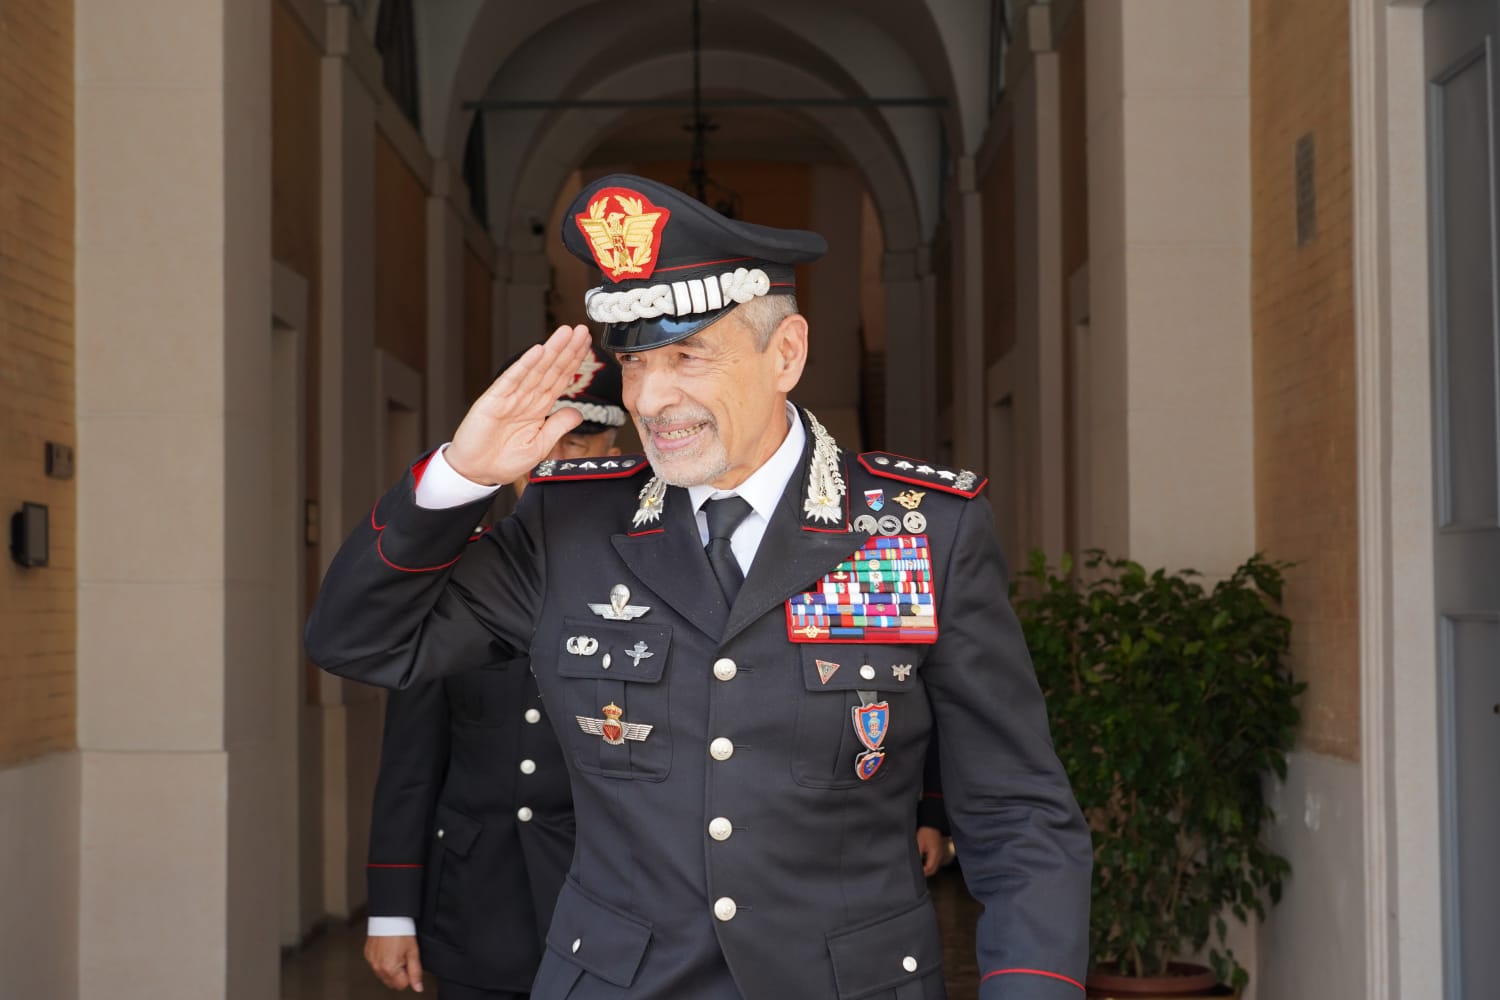 Cambio al vertice: il generale Burgio saluta la legione carabinieri Lazio, medaglie per 32 militari 1